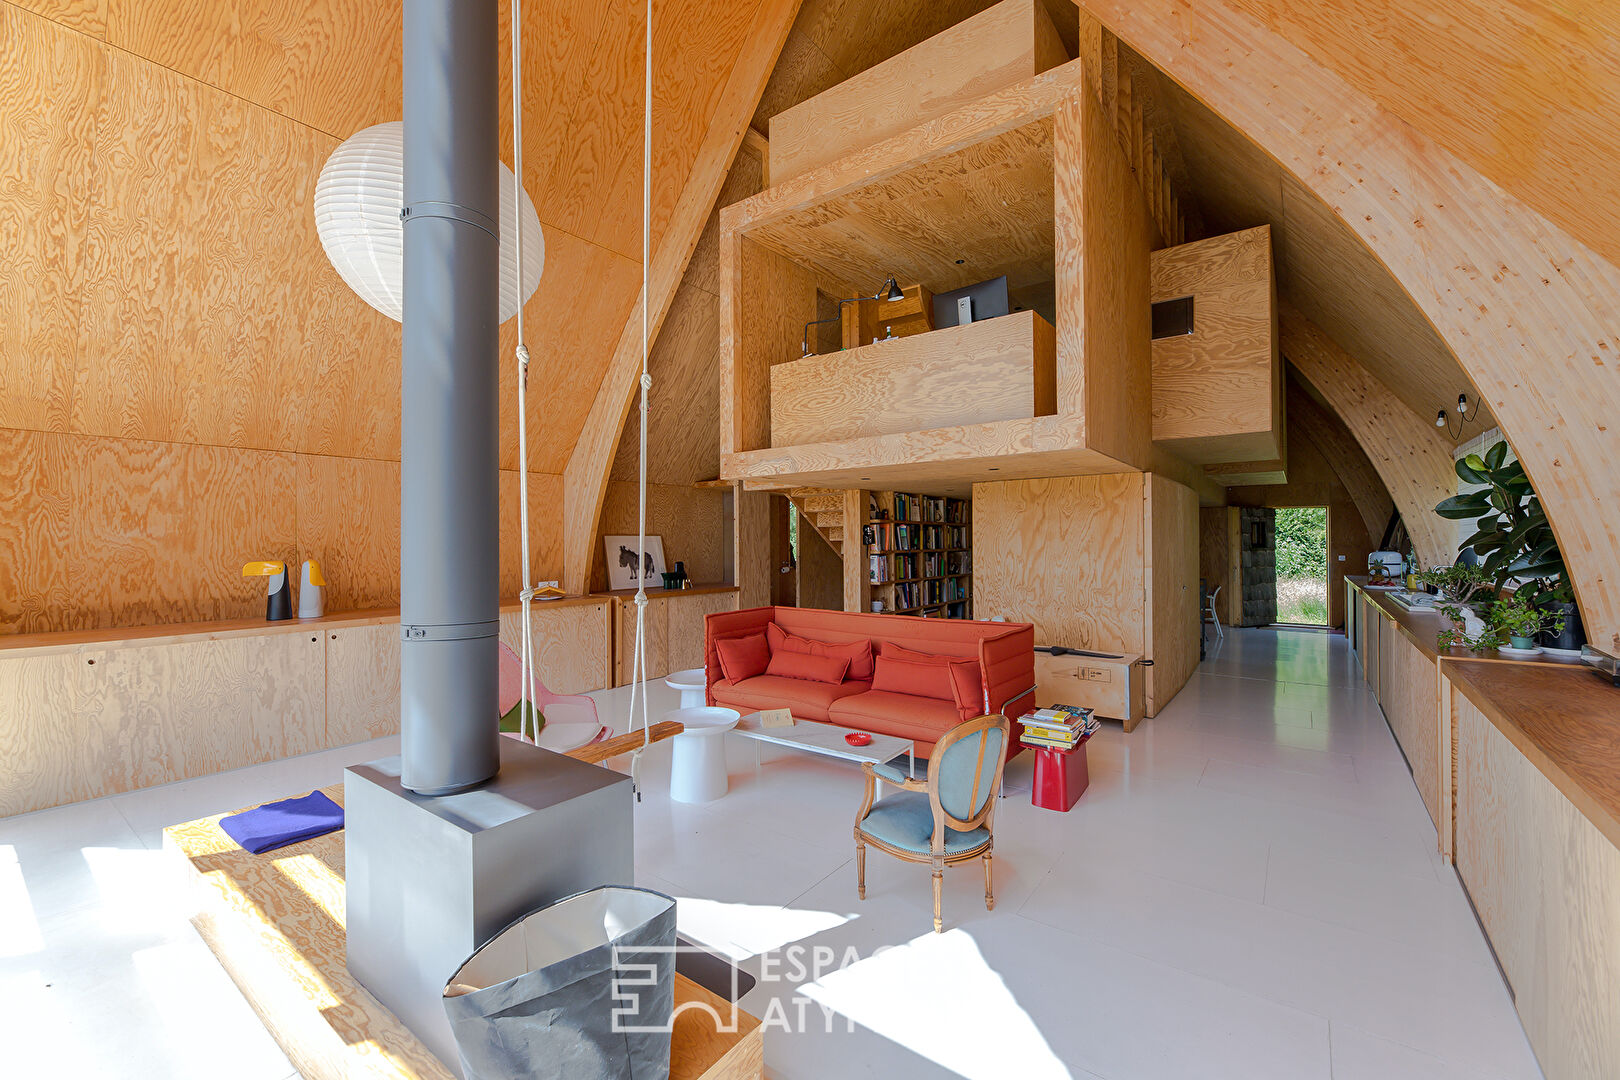 Maison d’architecte en ossature bois – L’atypisme à la campagne